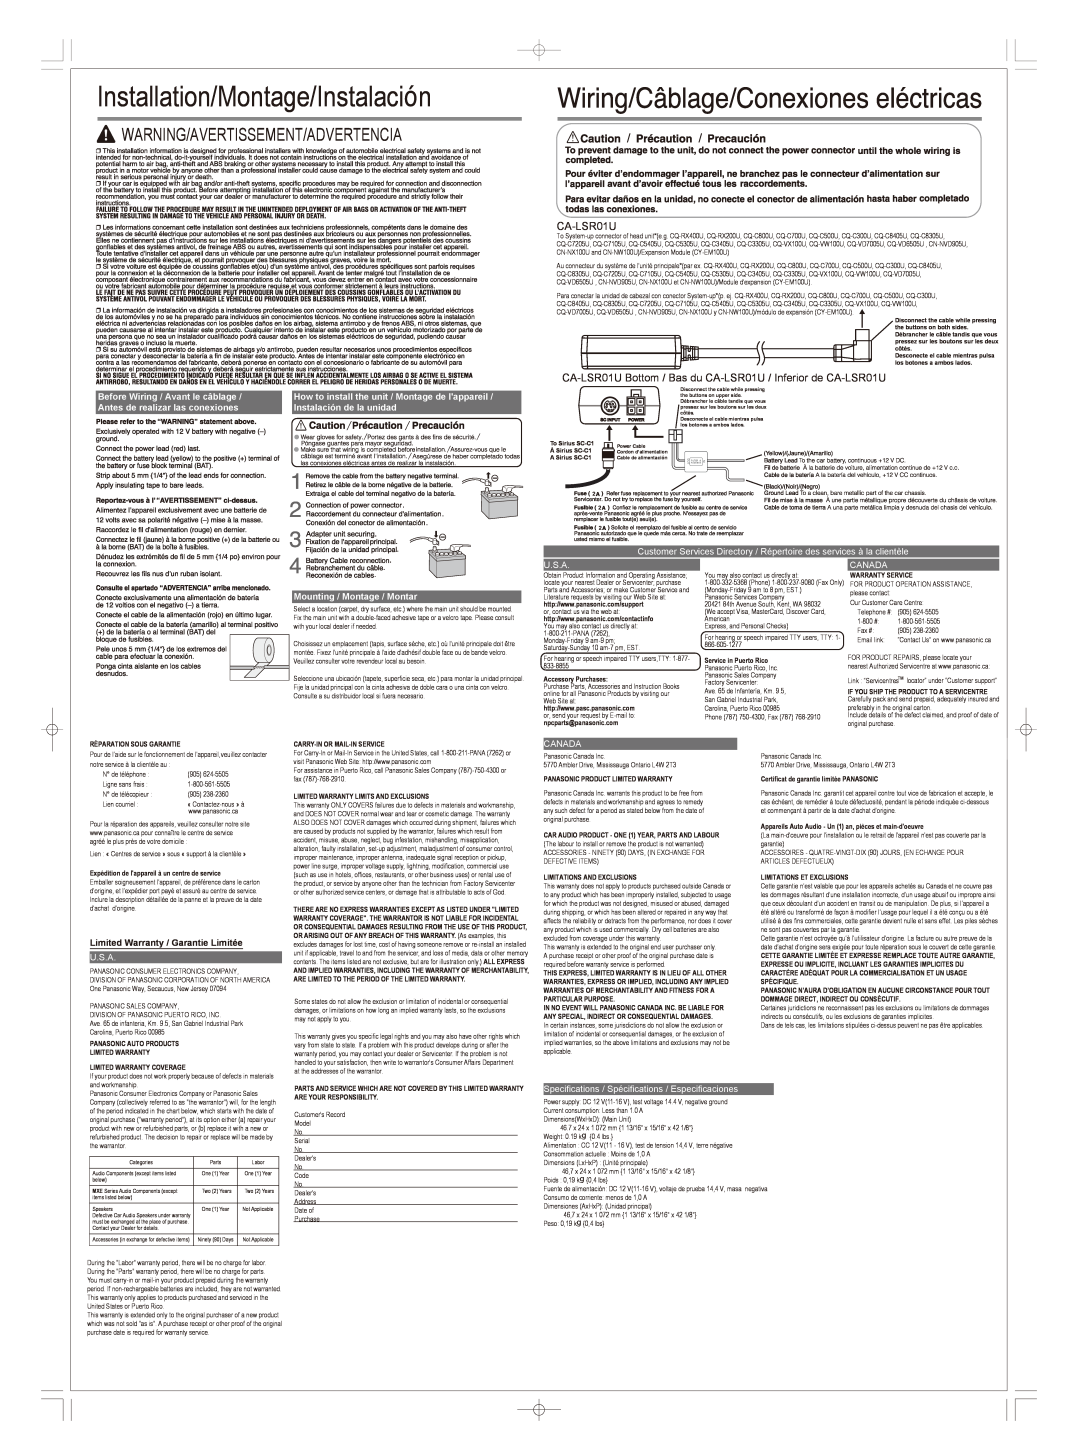 Panasonic CA-LSR01U specifications Installation/Montage/Instalacin, Warning/Avertissement/Advertencia, U.S.A, Canada 